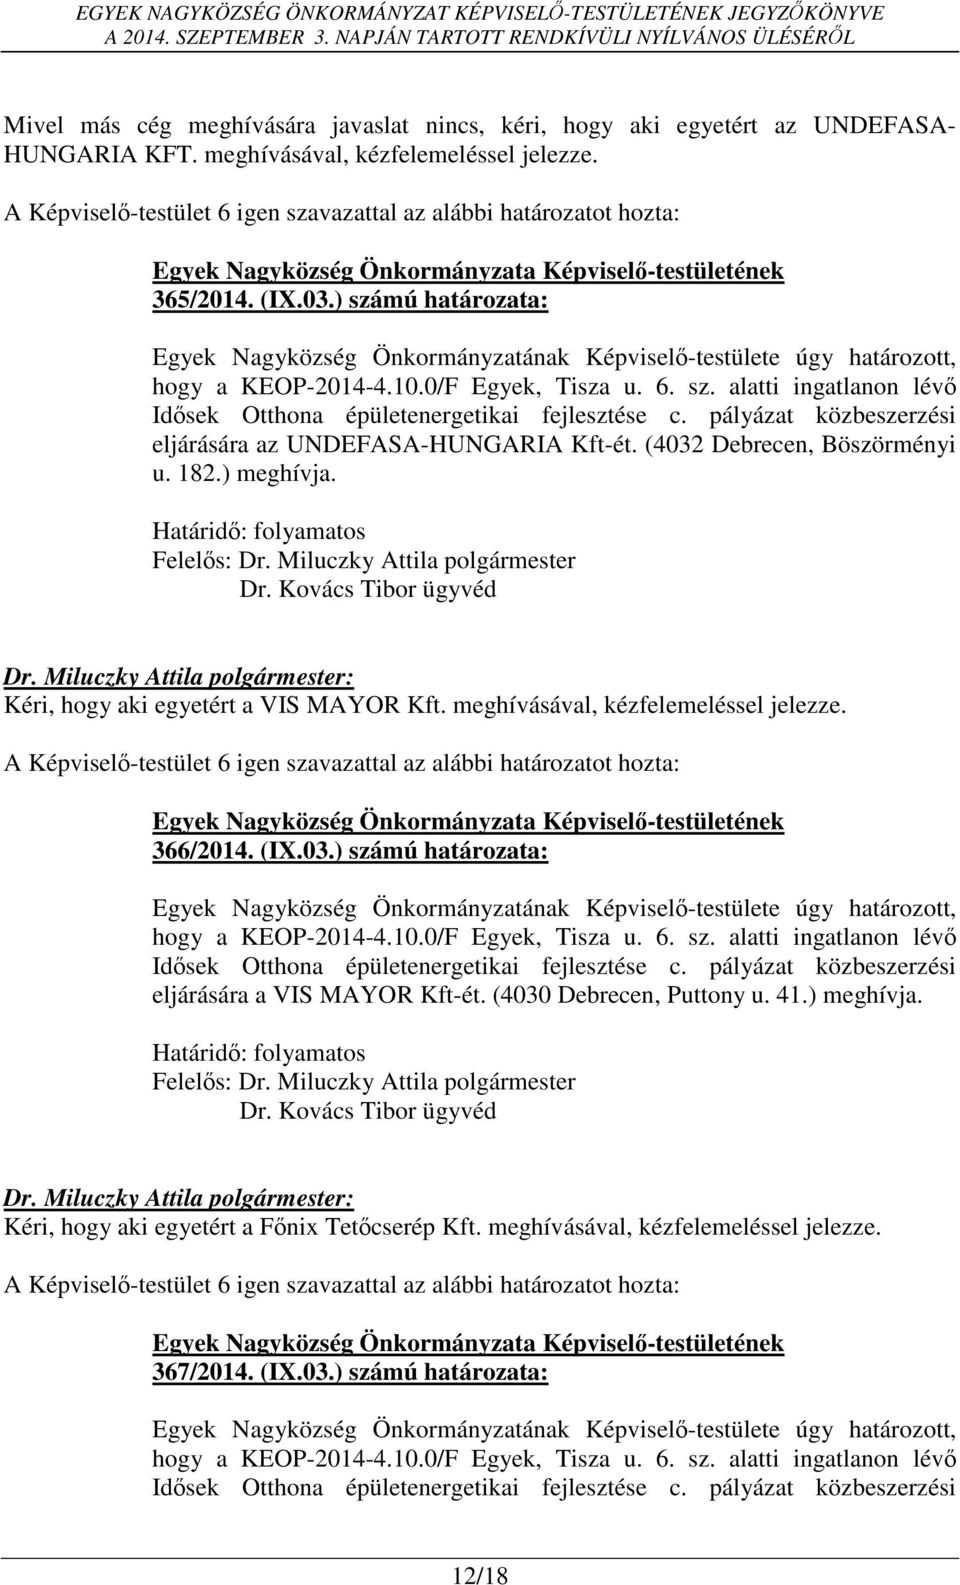 ) meghívja. Dr. Kovács Tibor ügyvéd Kéri, hogy aki egyetért a VIS MAYOR Kft. meghívásával, kézfelemeléssel jelezze. 366/2014. (IX.03.) számú határozata: hogy a KEOP-2014-4.10.0/F Egyek, Tisza u. 6.